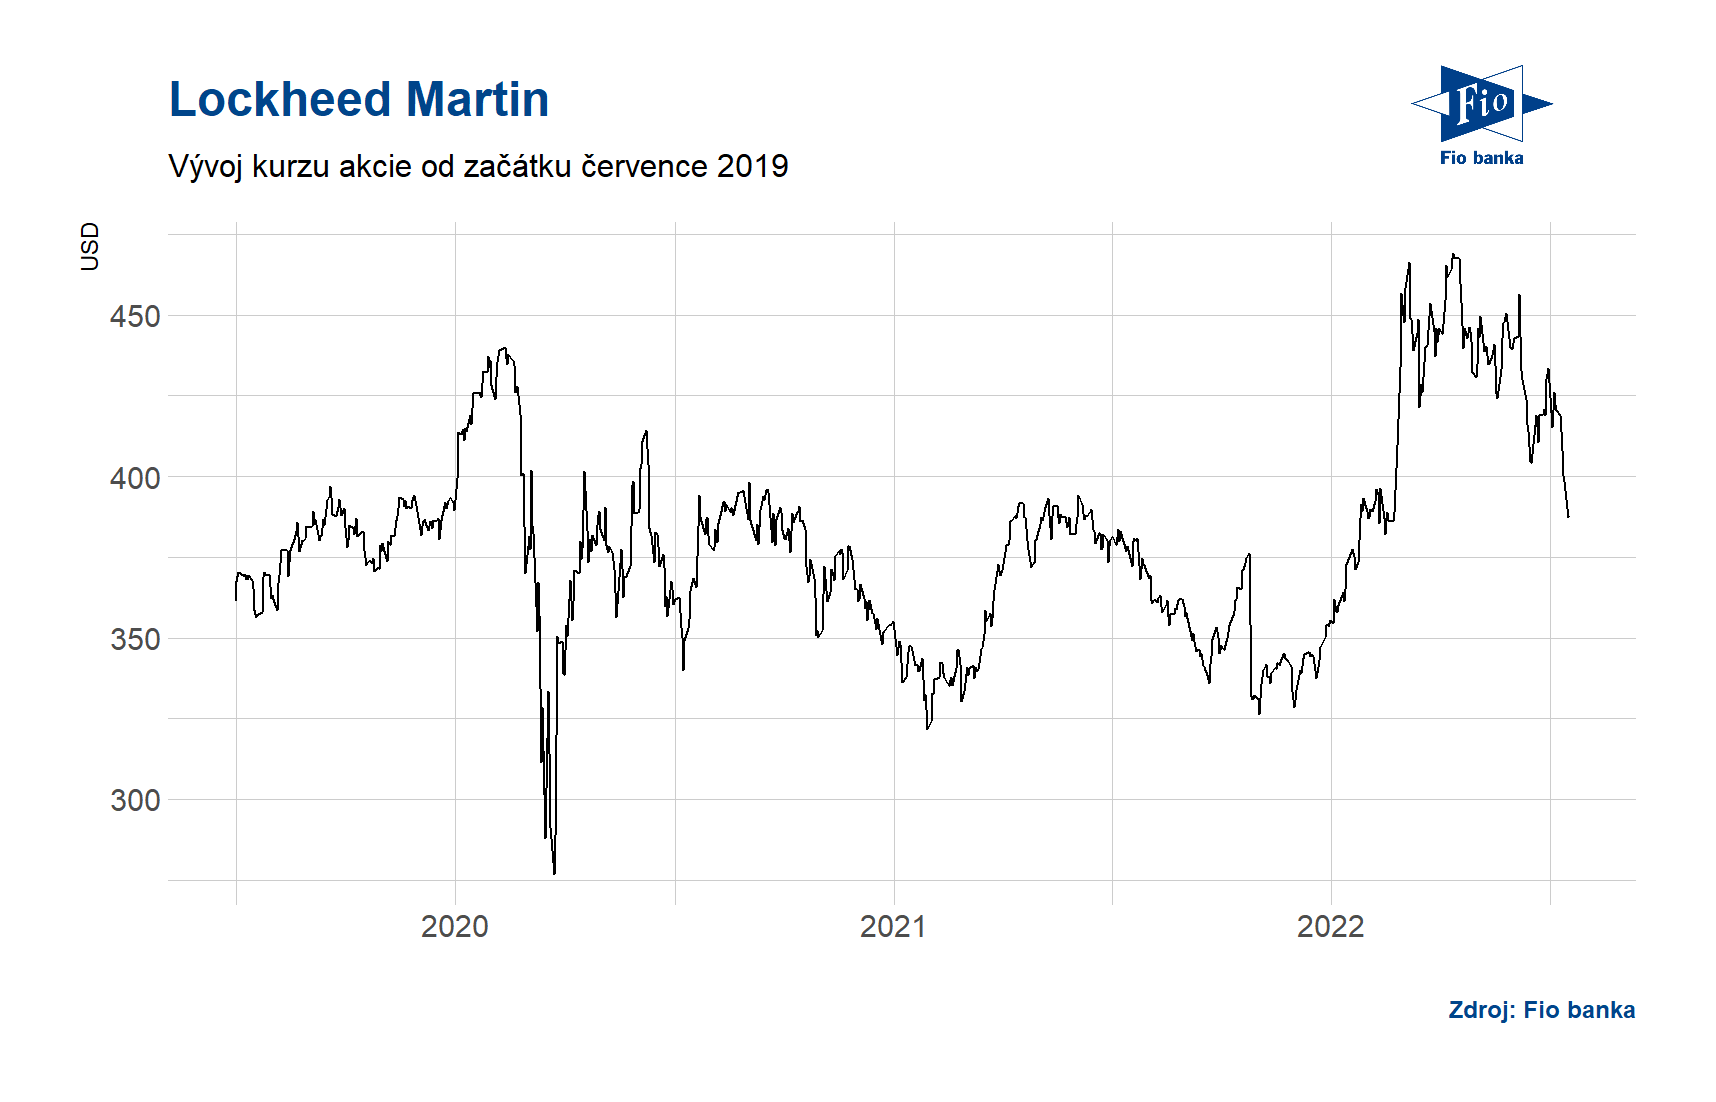 Vývoj ceny akcie Lockheed Martin